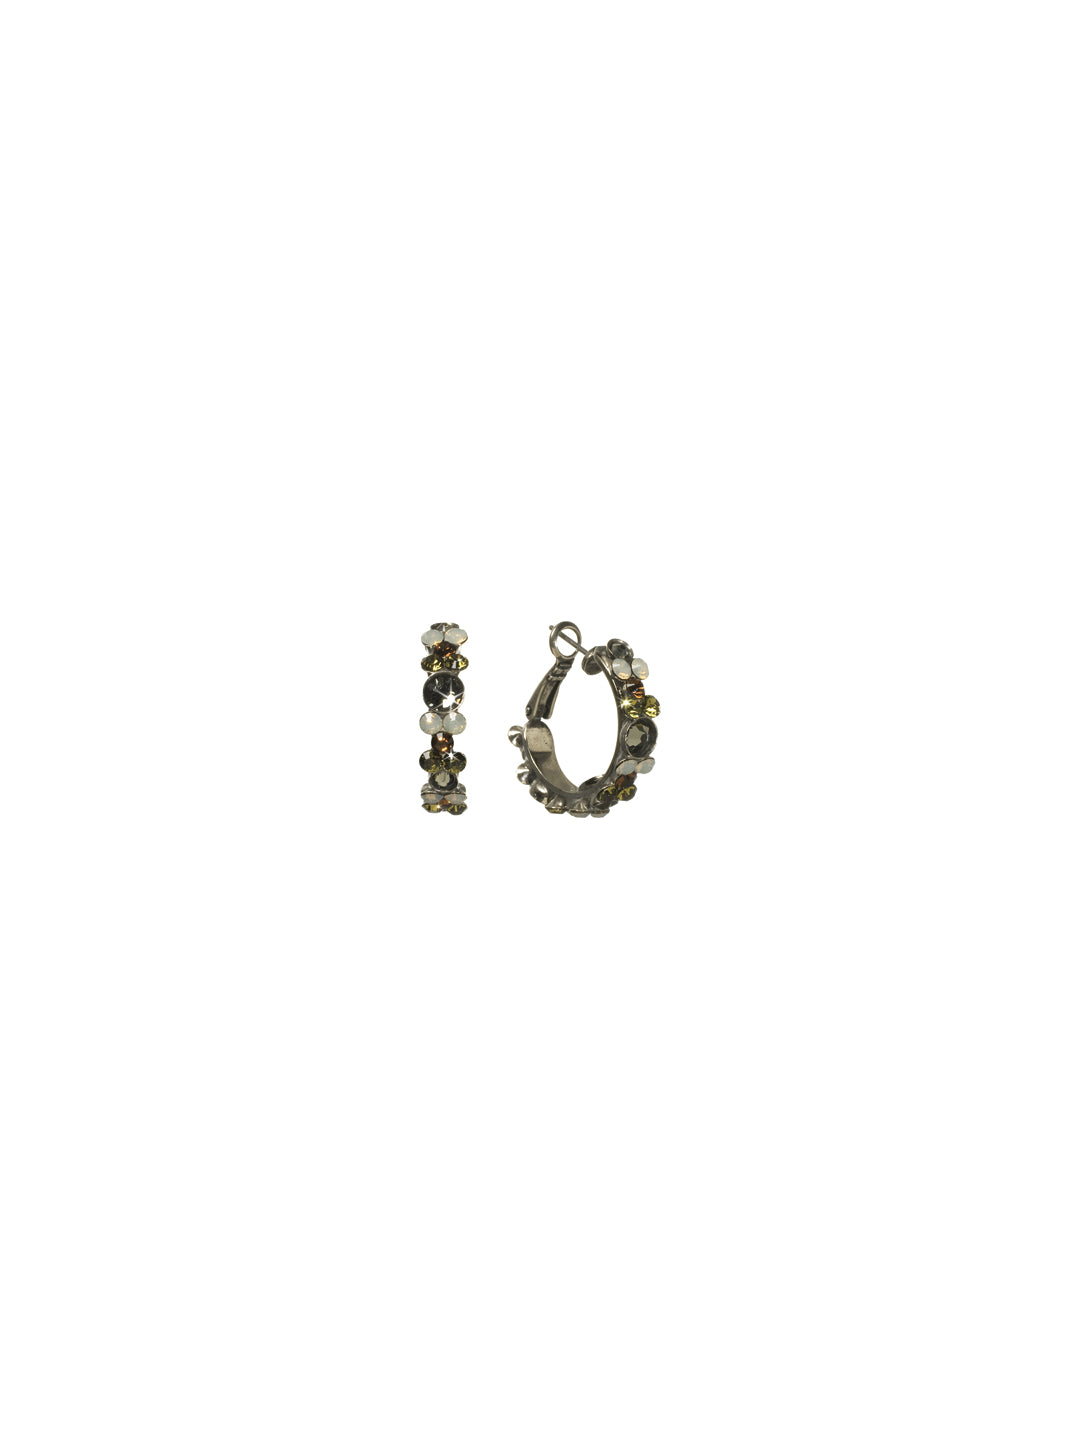 Floral Hoop Earrings - EBP15ASCJ